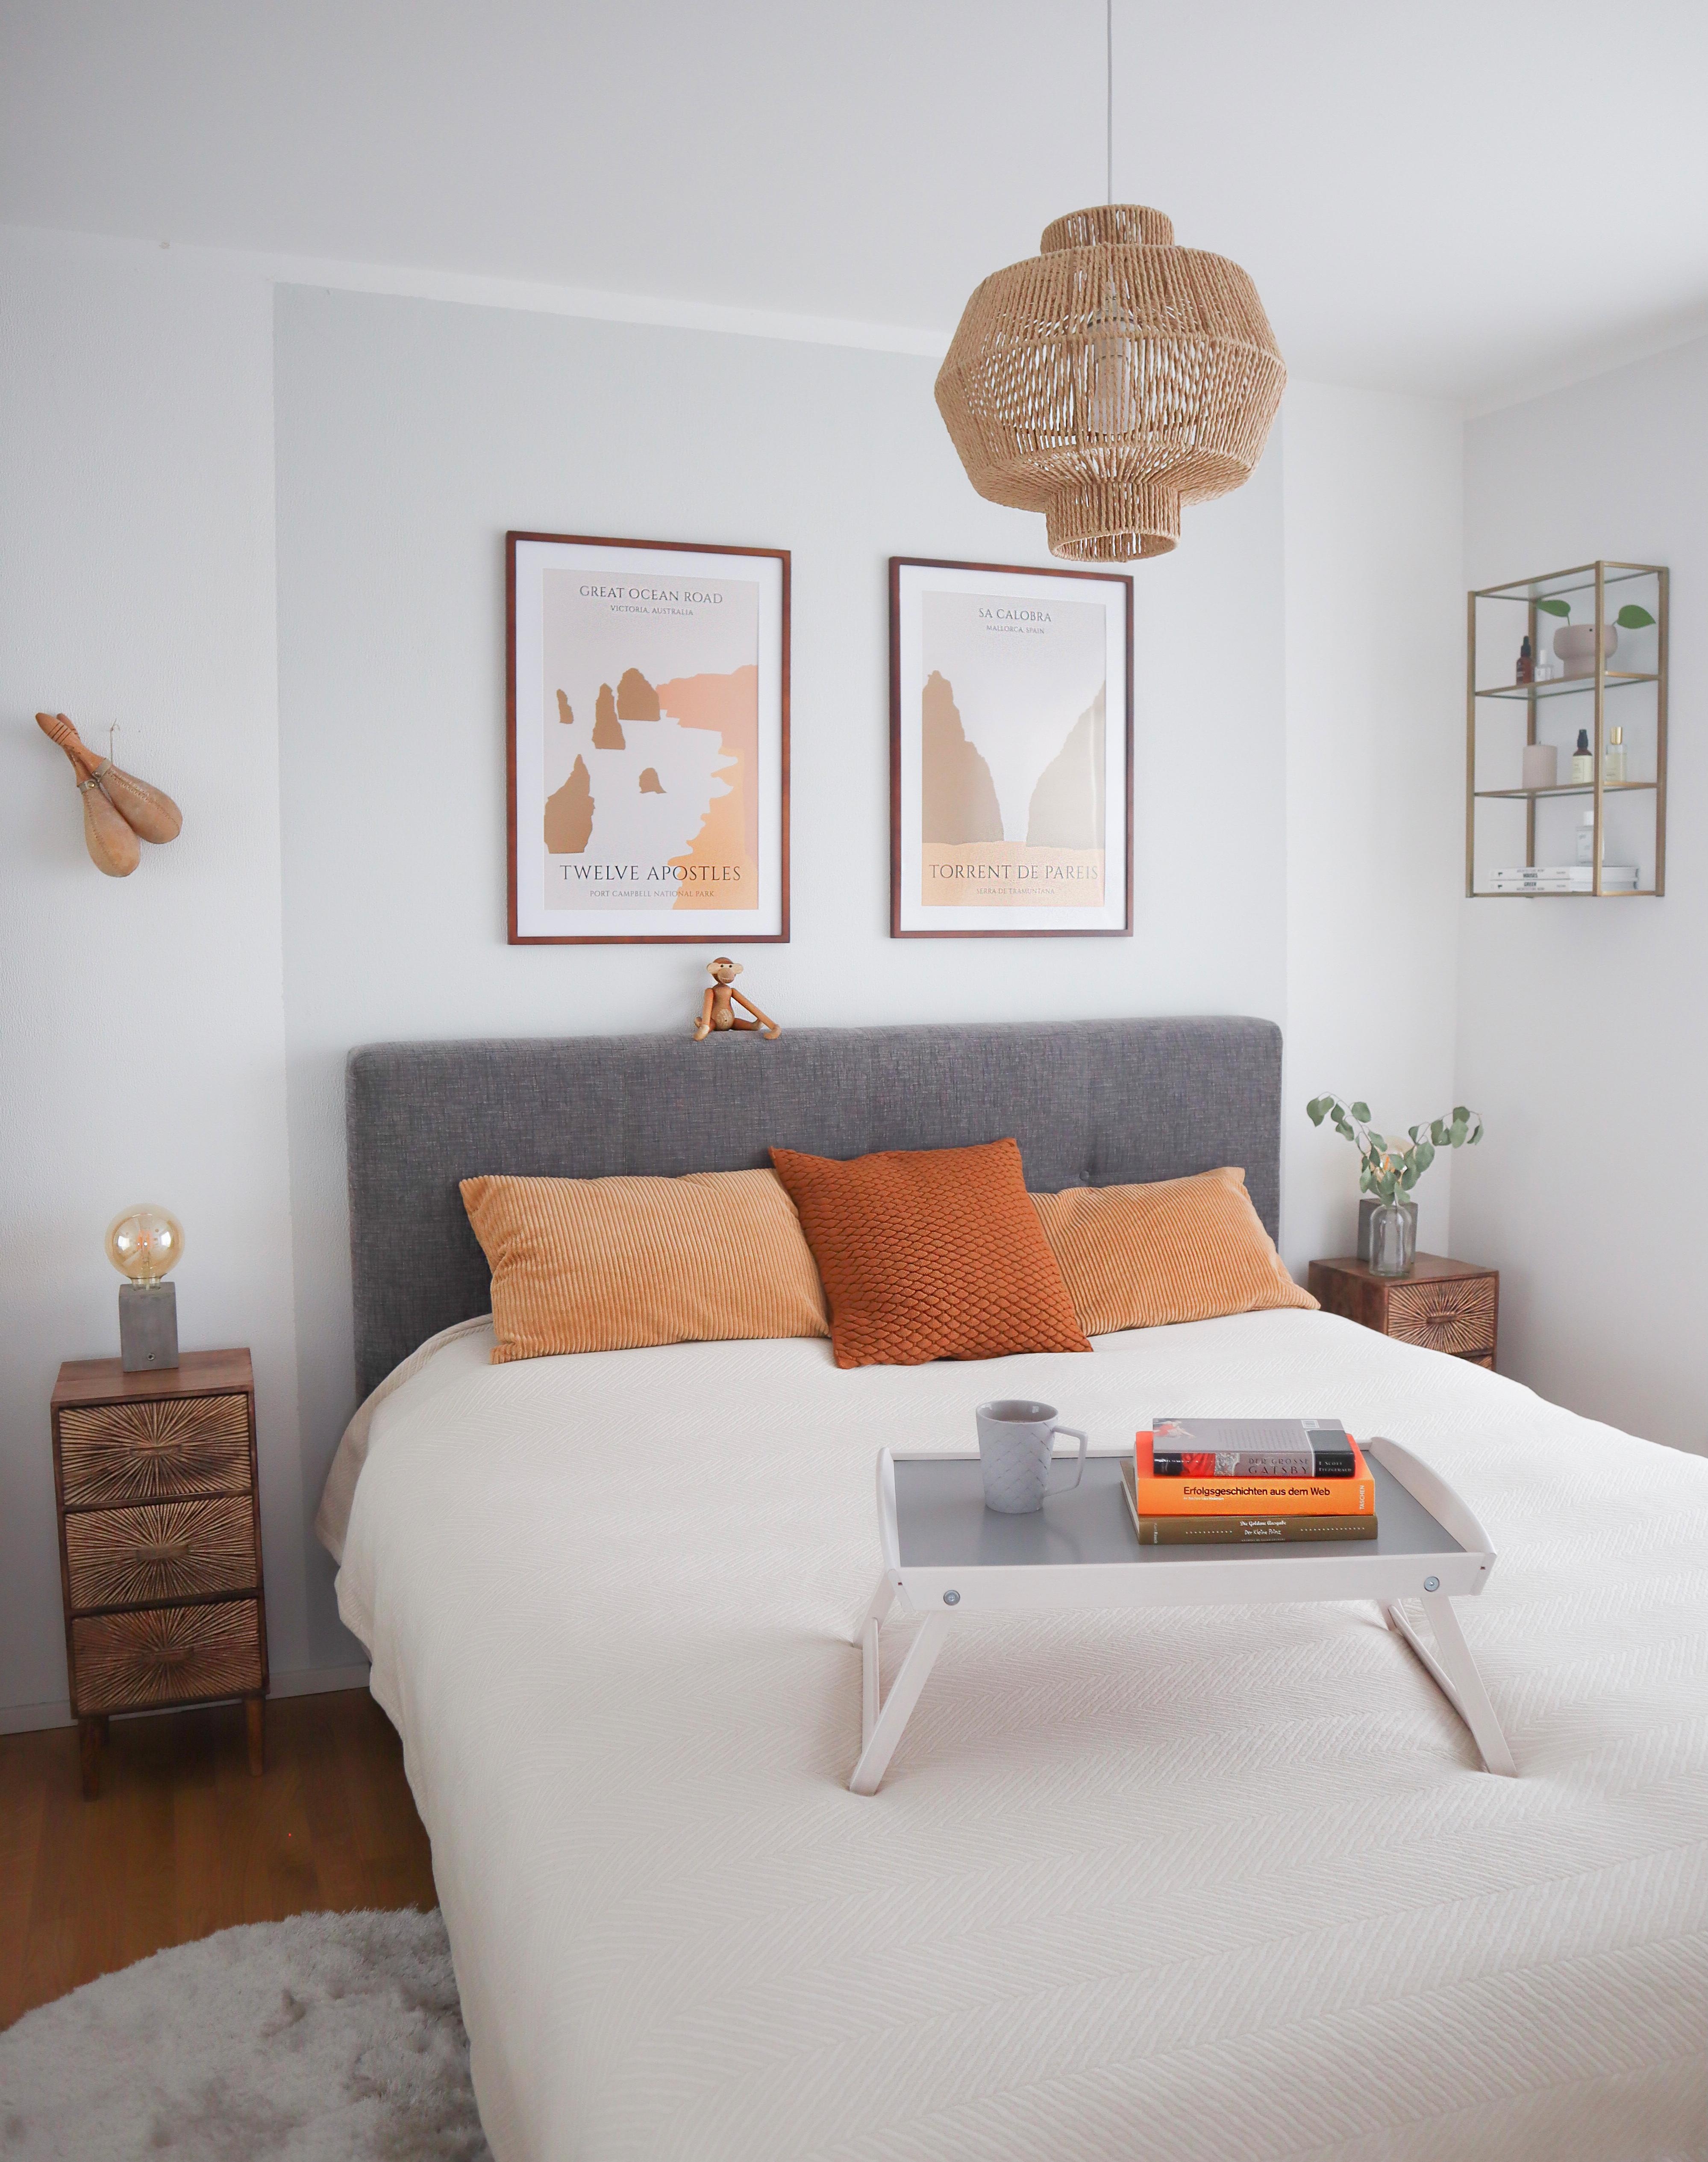 Unser 10qm kleines #Schlafzimmer haben wir in hellen Tönen gestaltet #bett #gutenacht #poster #bücher #kaffee #tablett